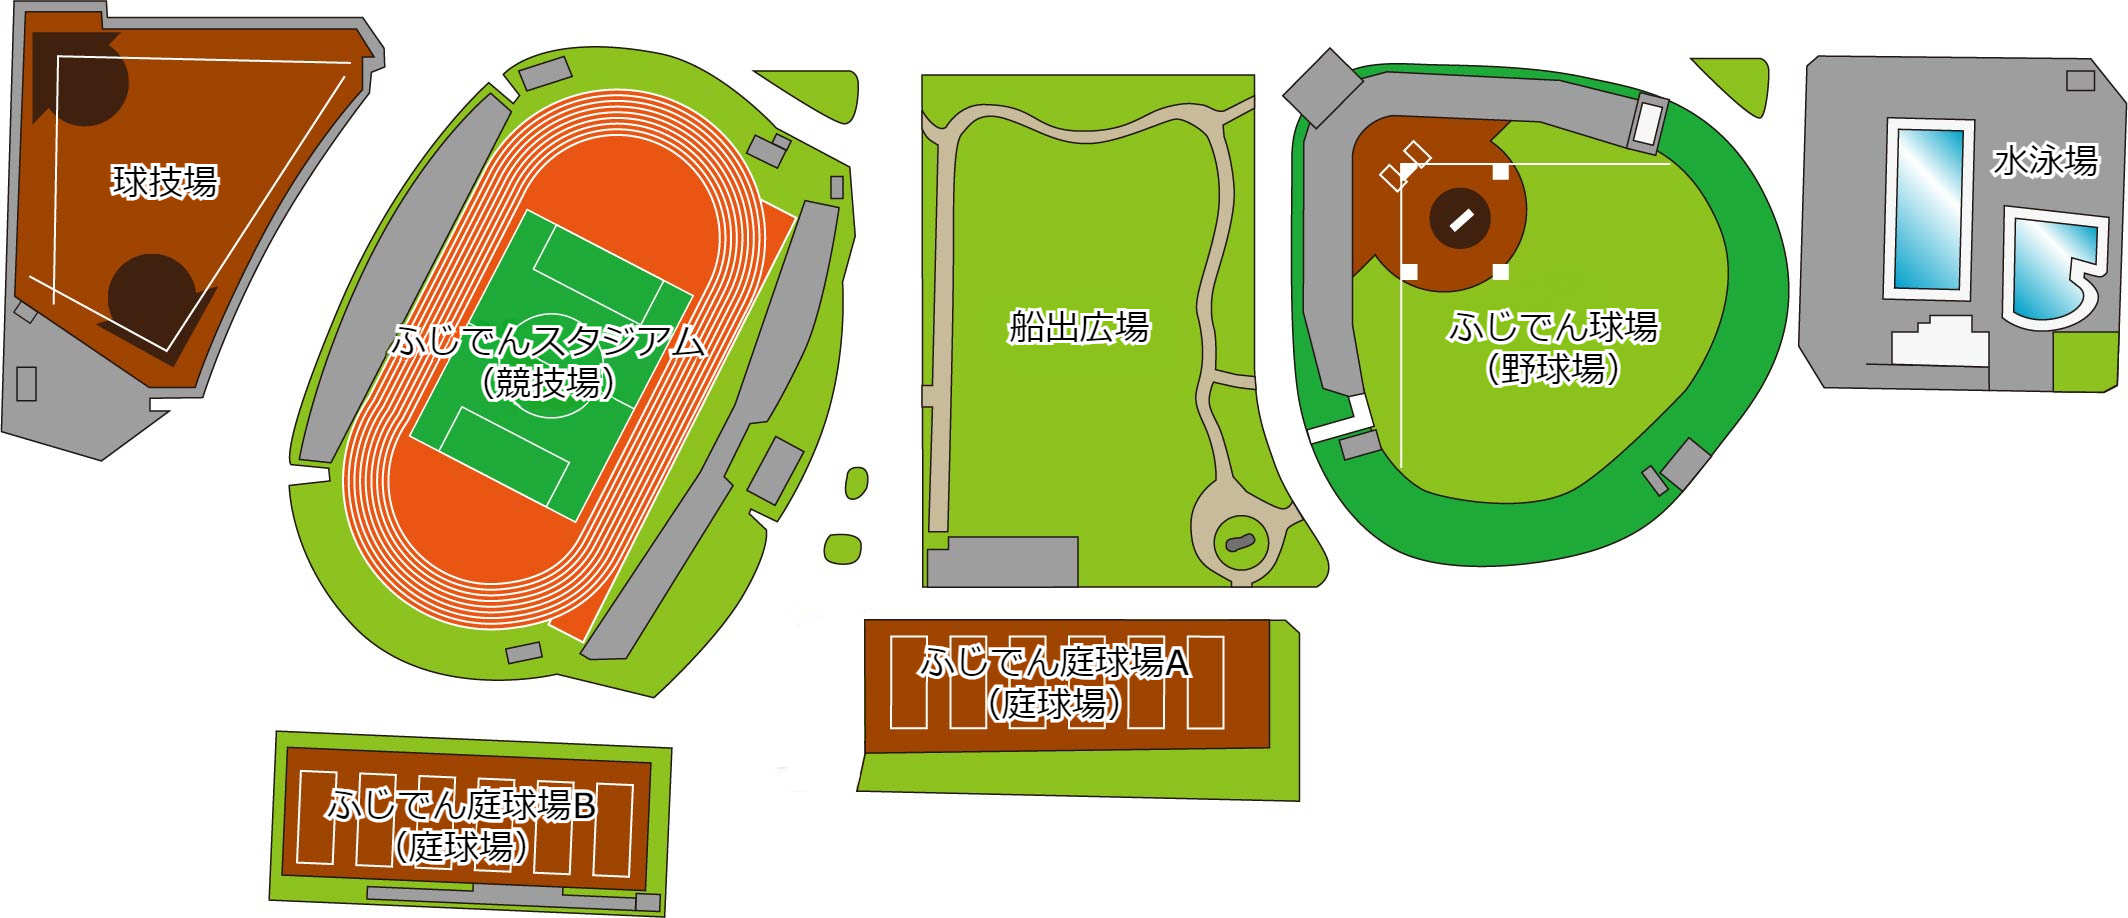 緑が丘スポーツ公園MAP